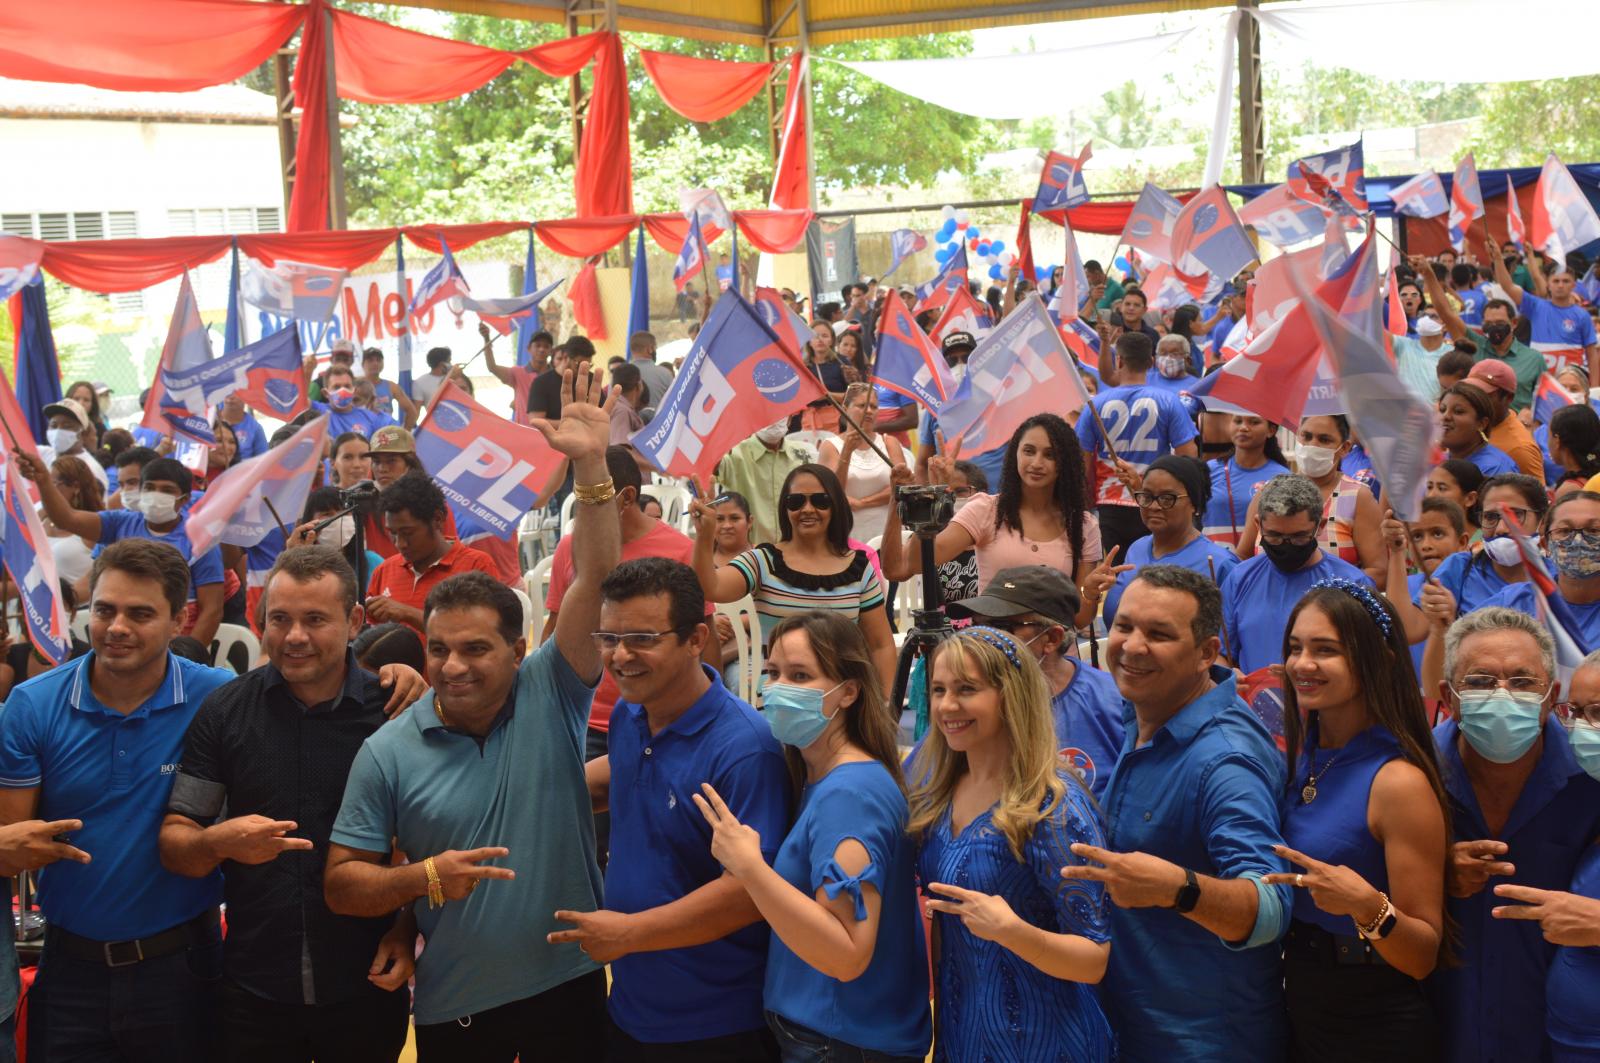 Ney Passinho e Dr. Lindomar, no meio da semana, levam multidão para convenção e confirmam sua força política